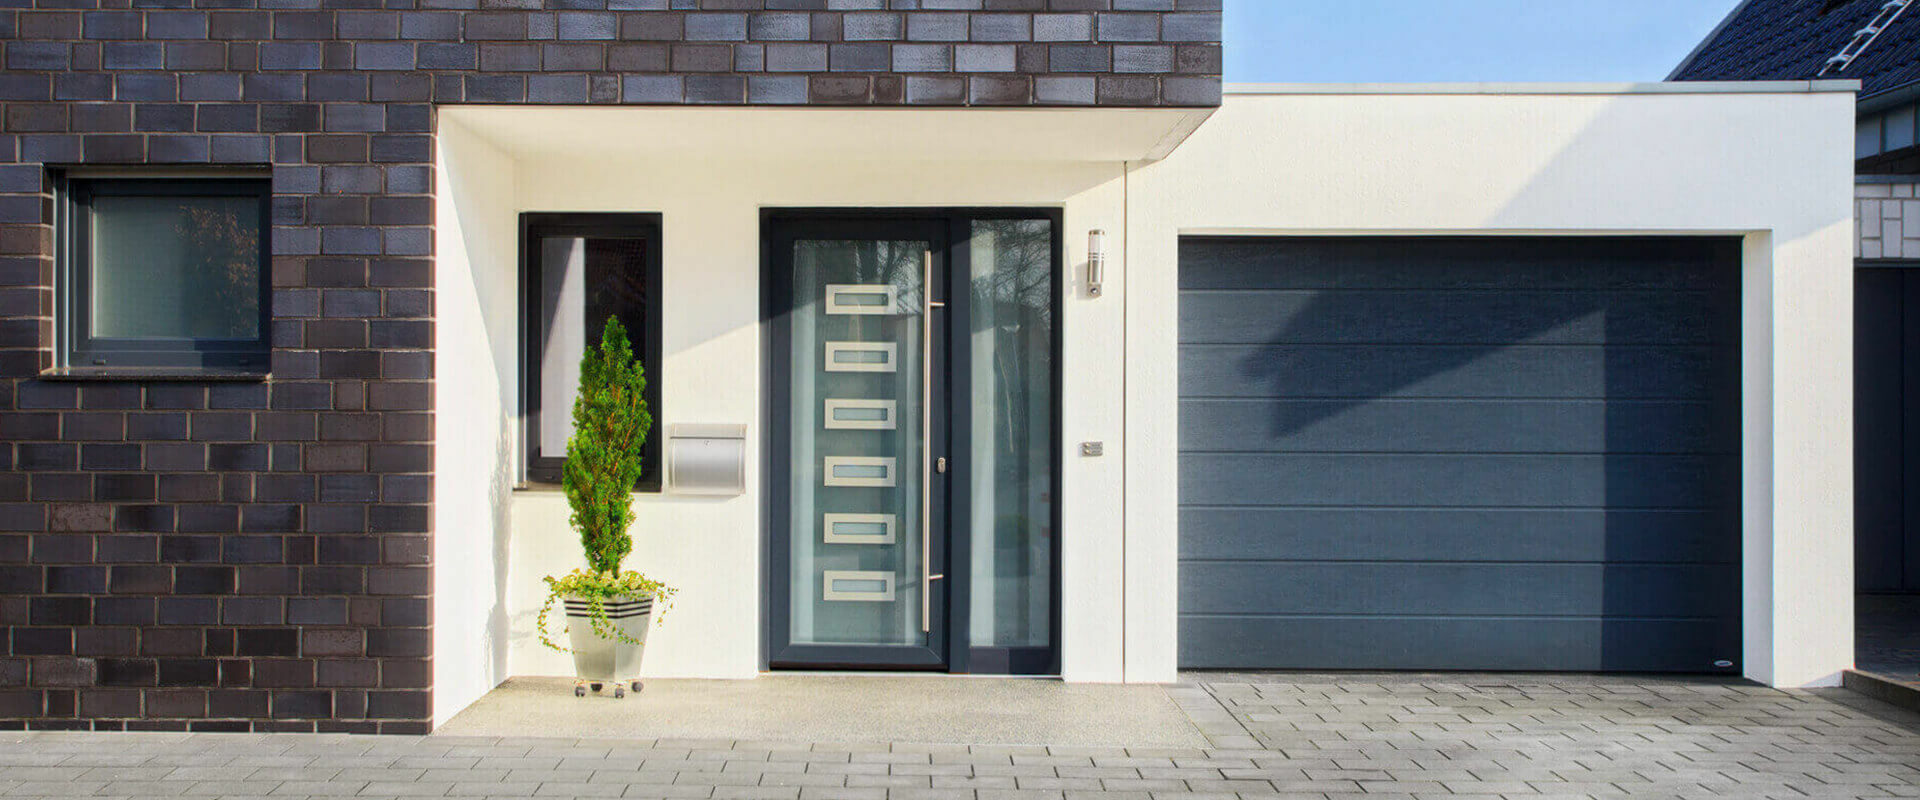 Haustüren aus Aluminium von HG Raumdesign - Maßgefertigt und individuell geplant